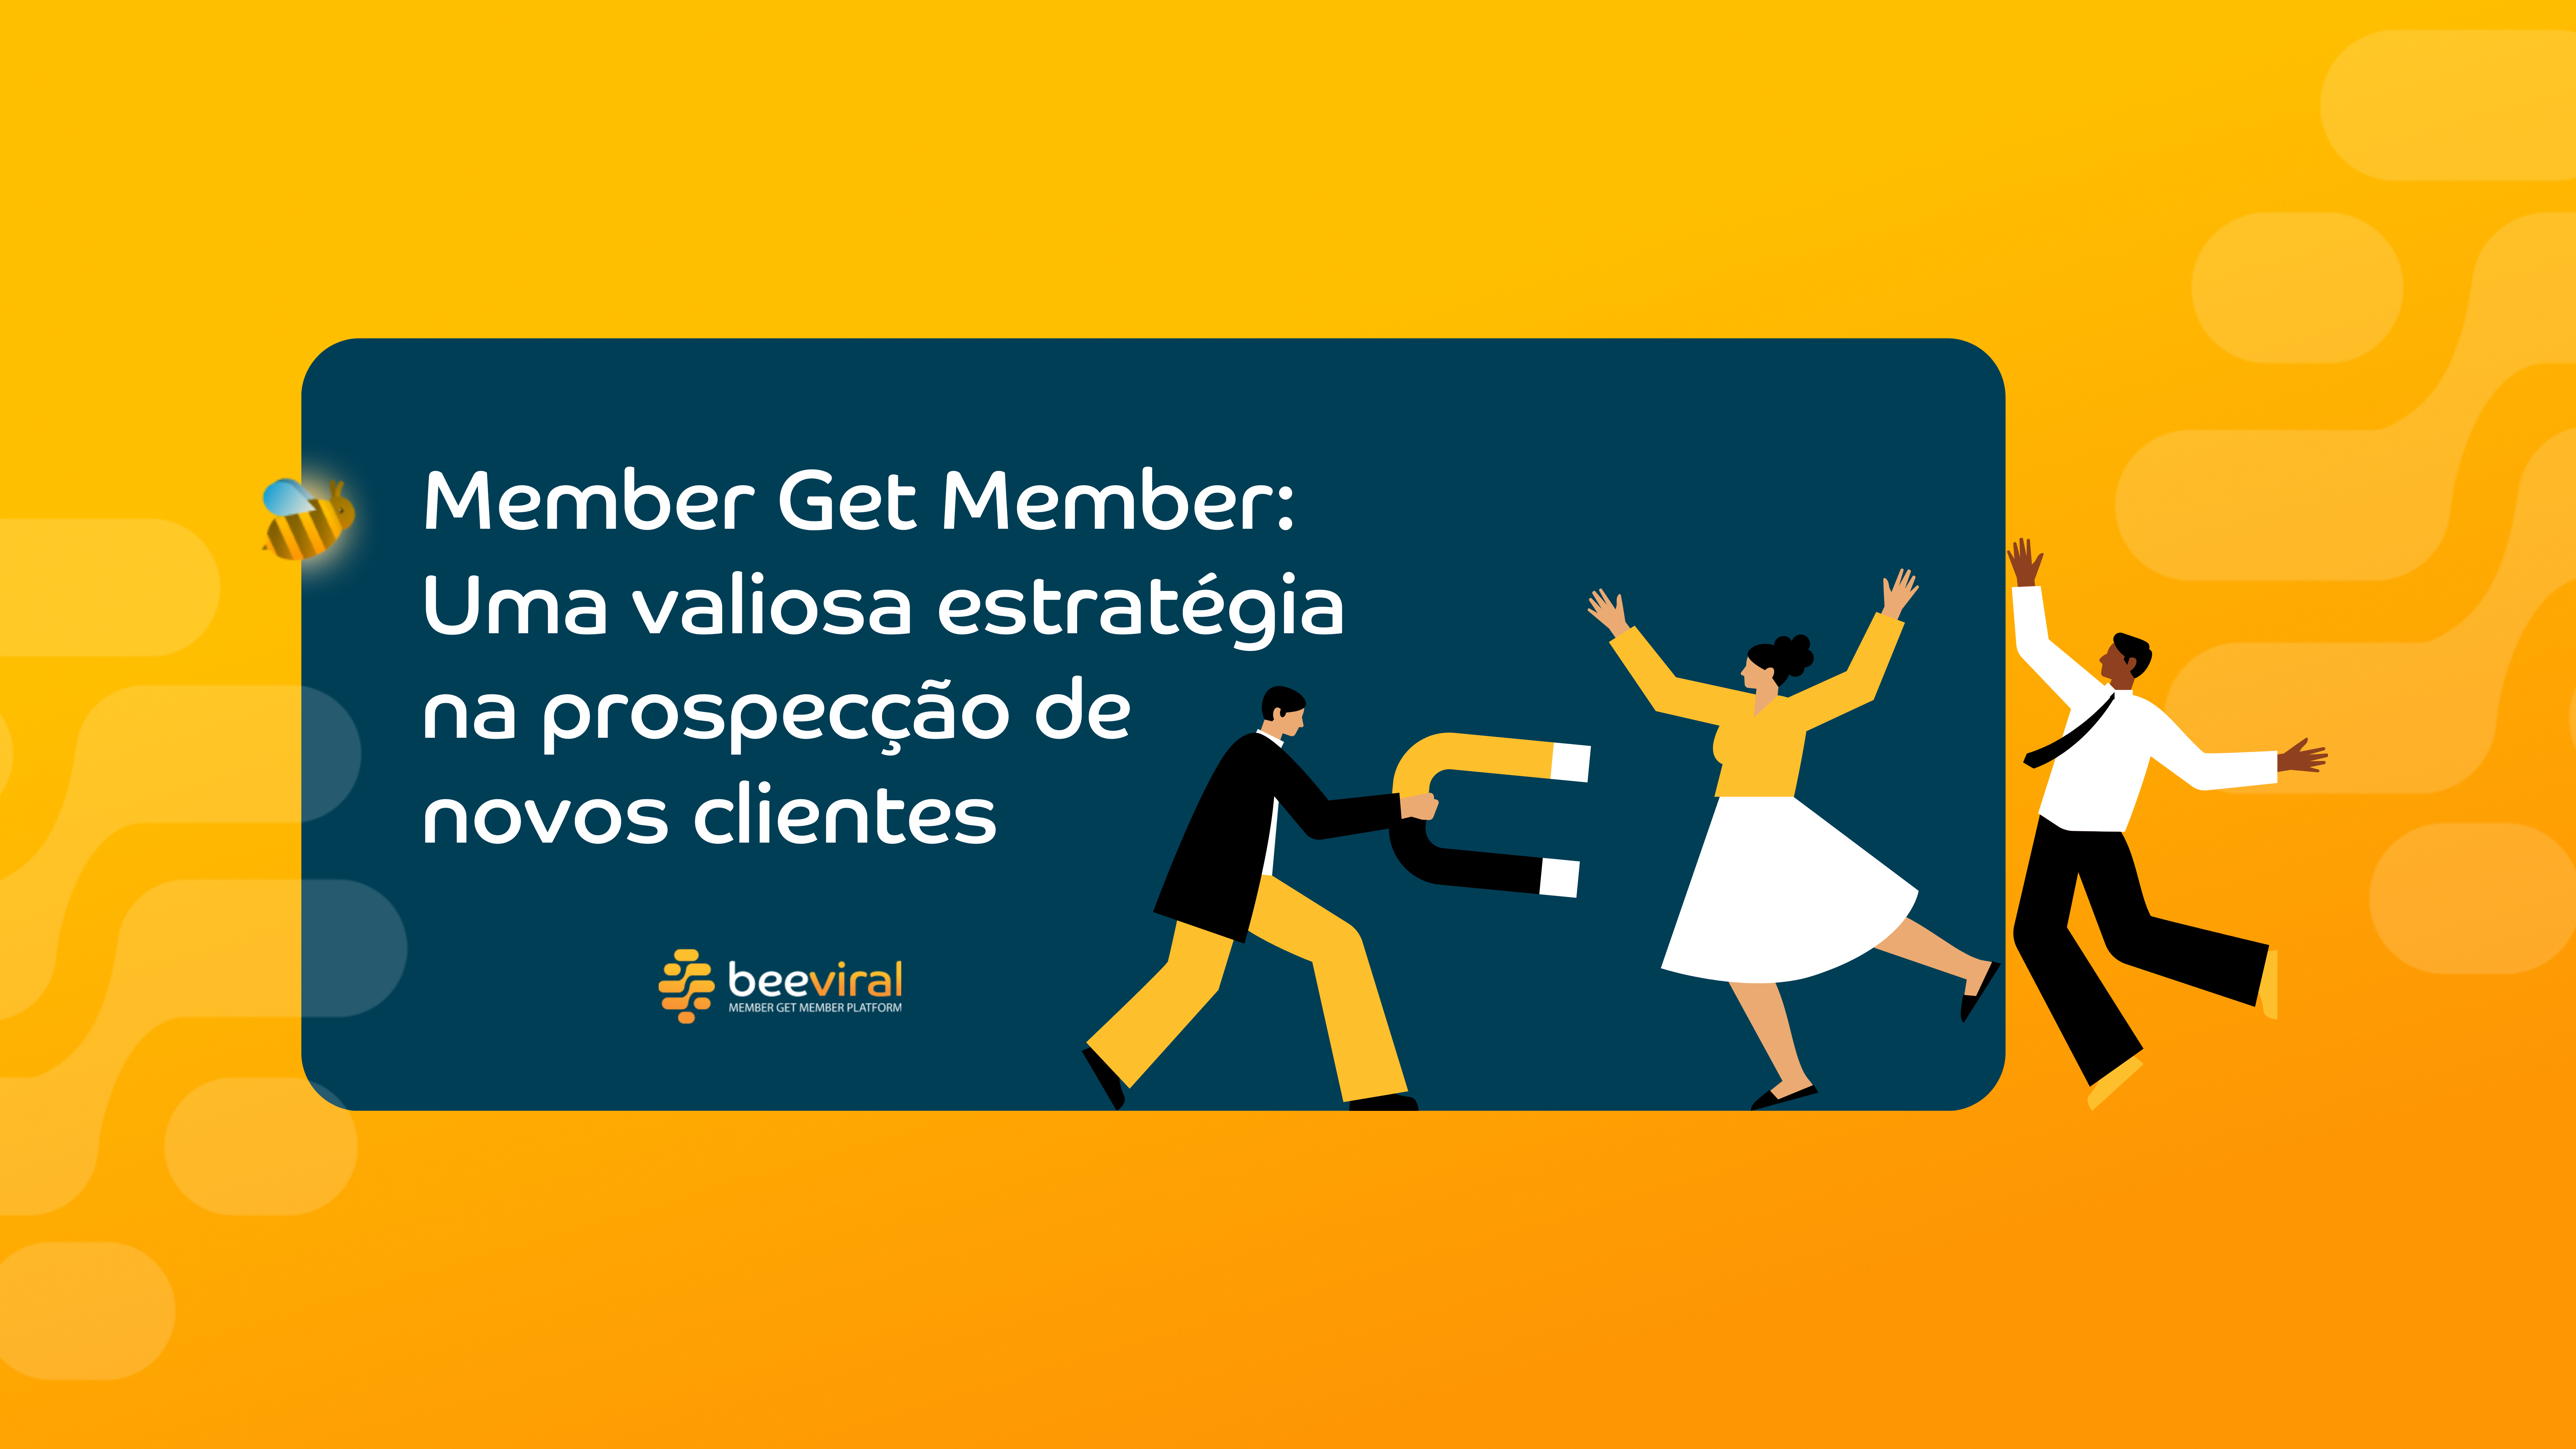 Member Get Member: Uma valiosa estratégia na prospecção de novos clientes